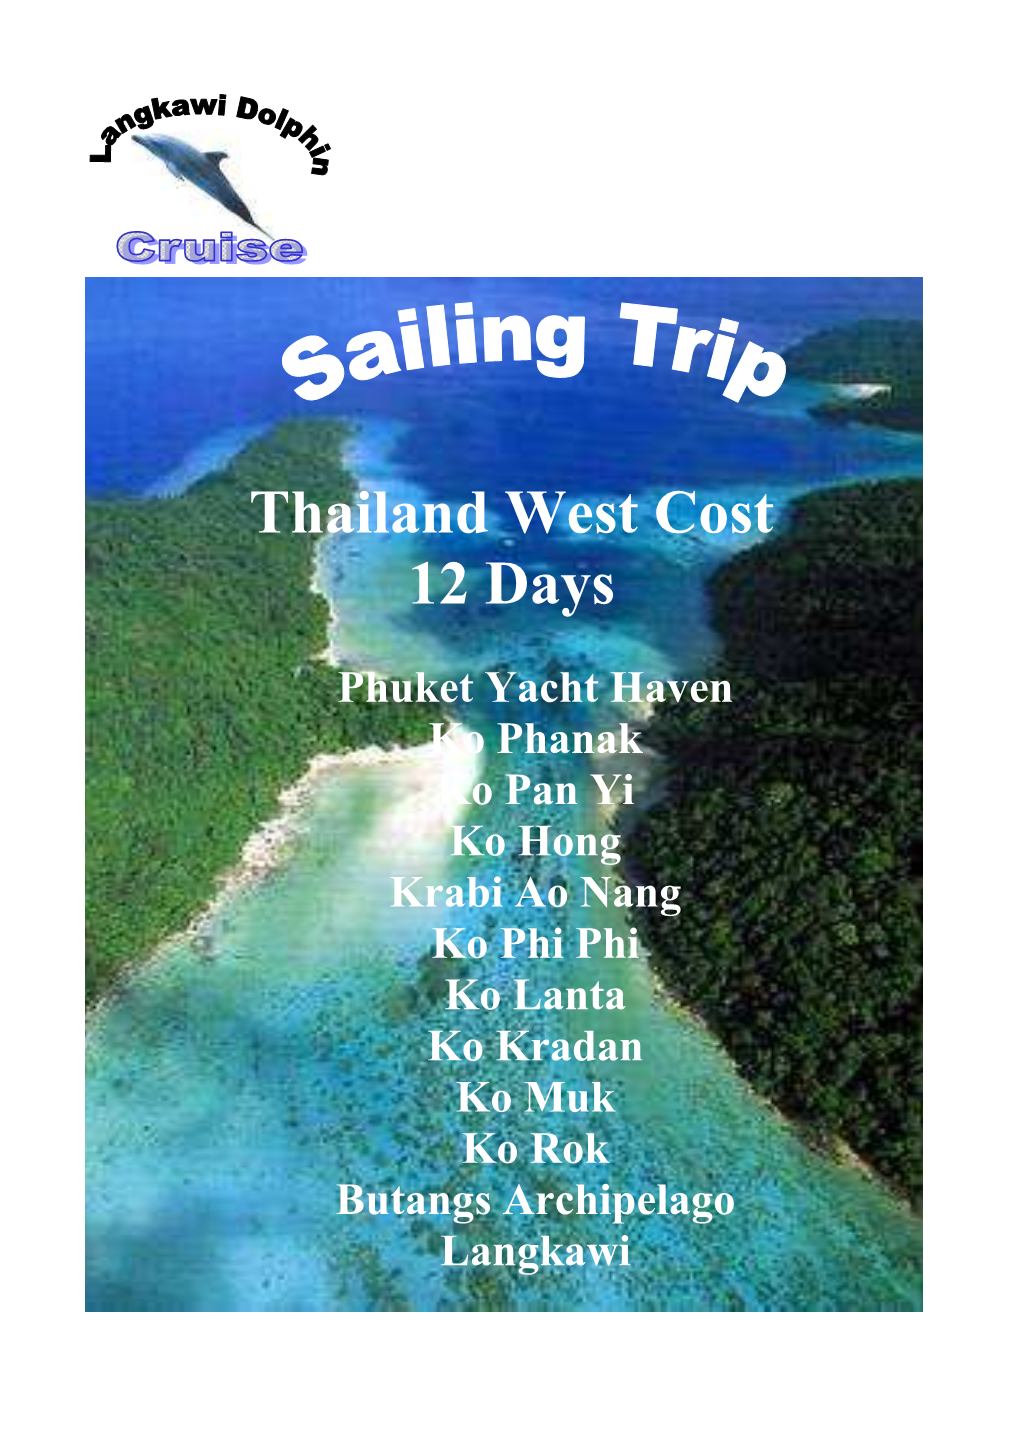 12 Days Cruising Trip Thailand Yacht Haven to Langkawi